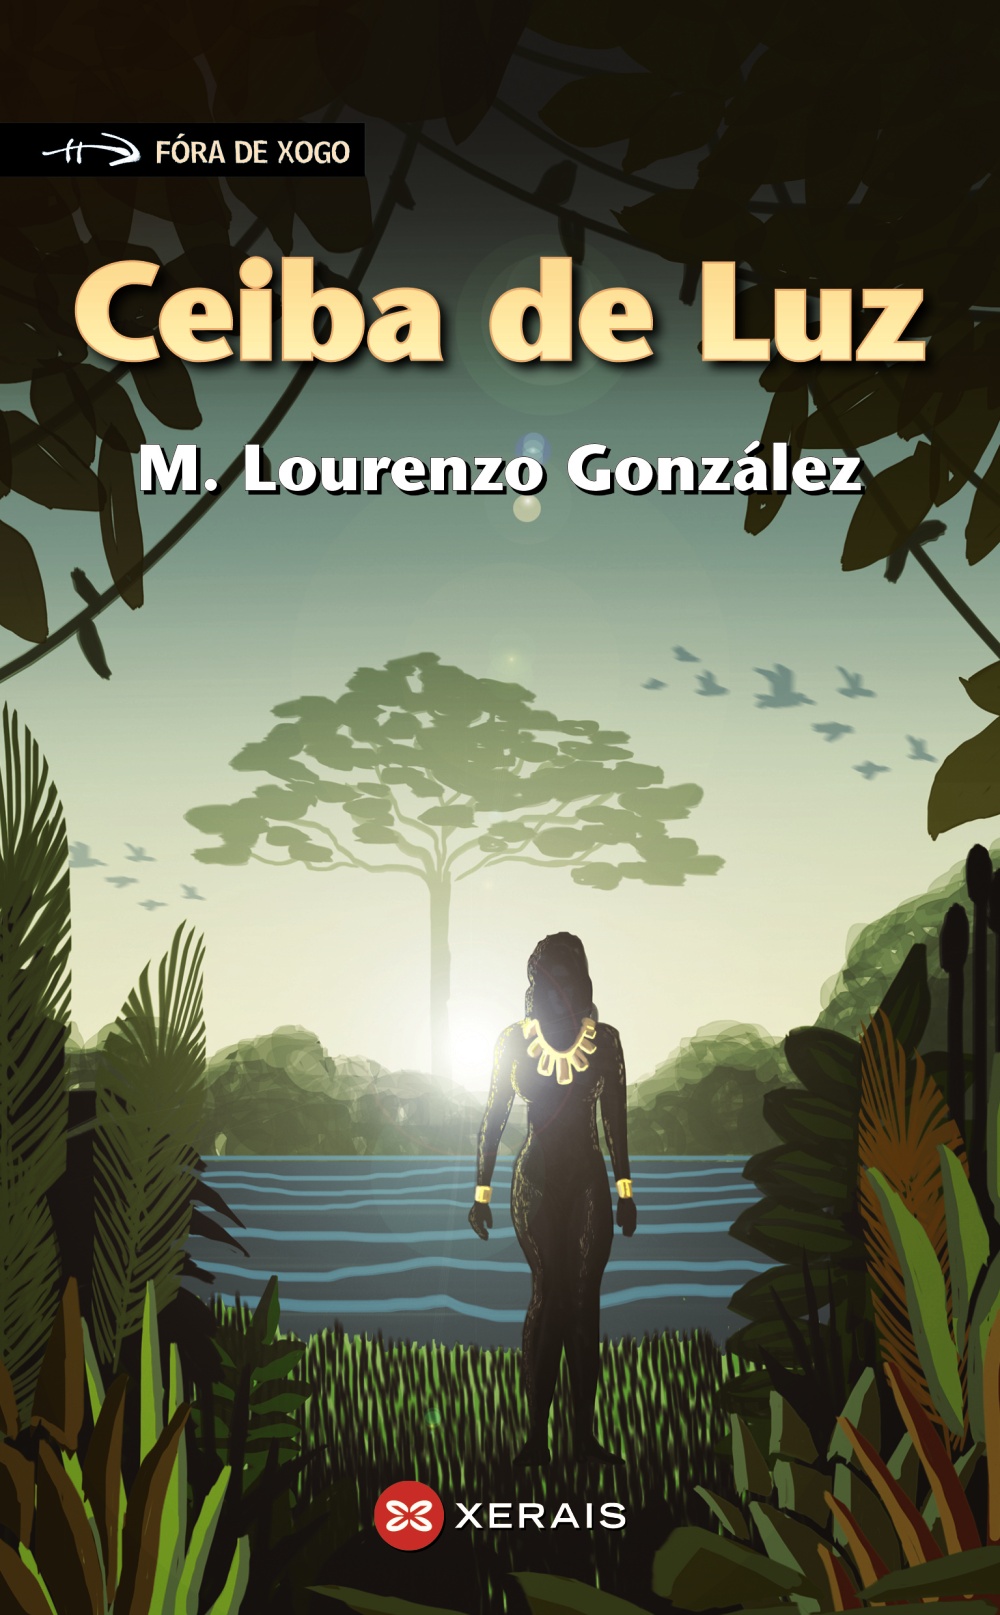 Ceiba de Luz